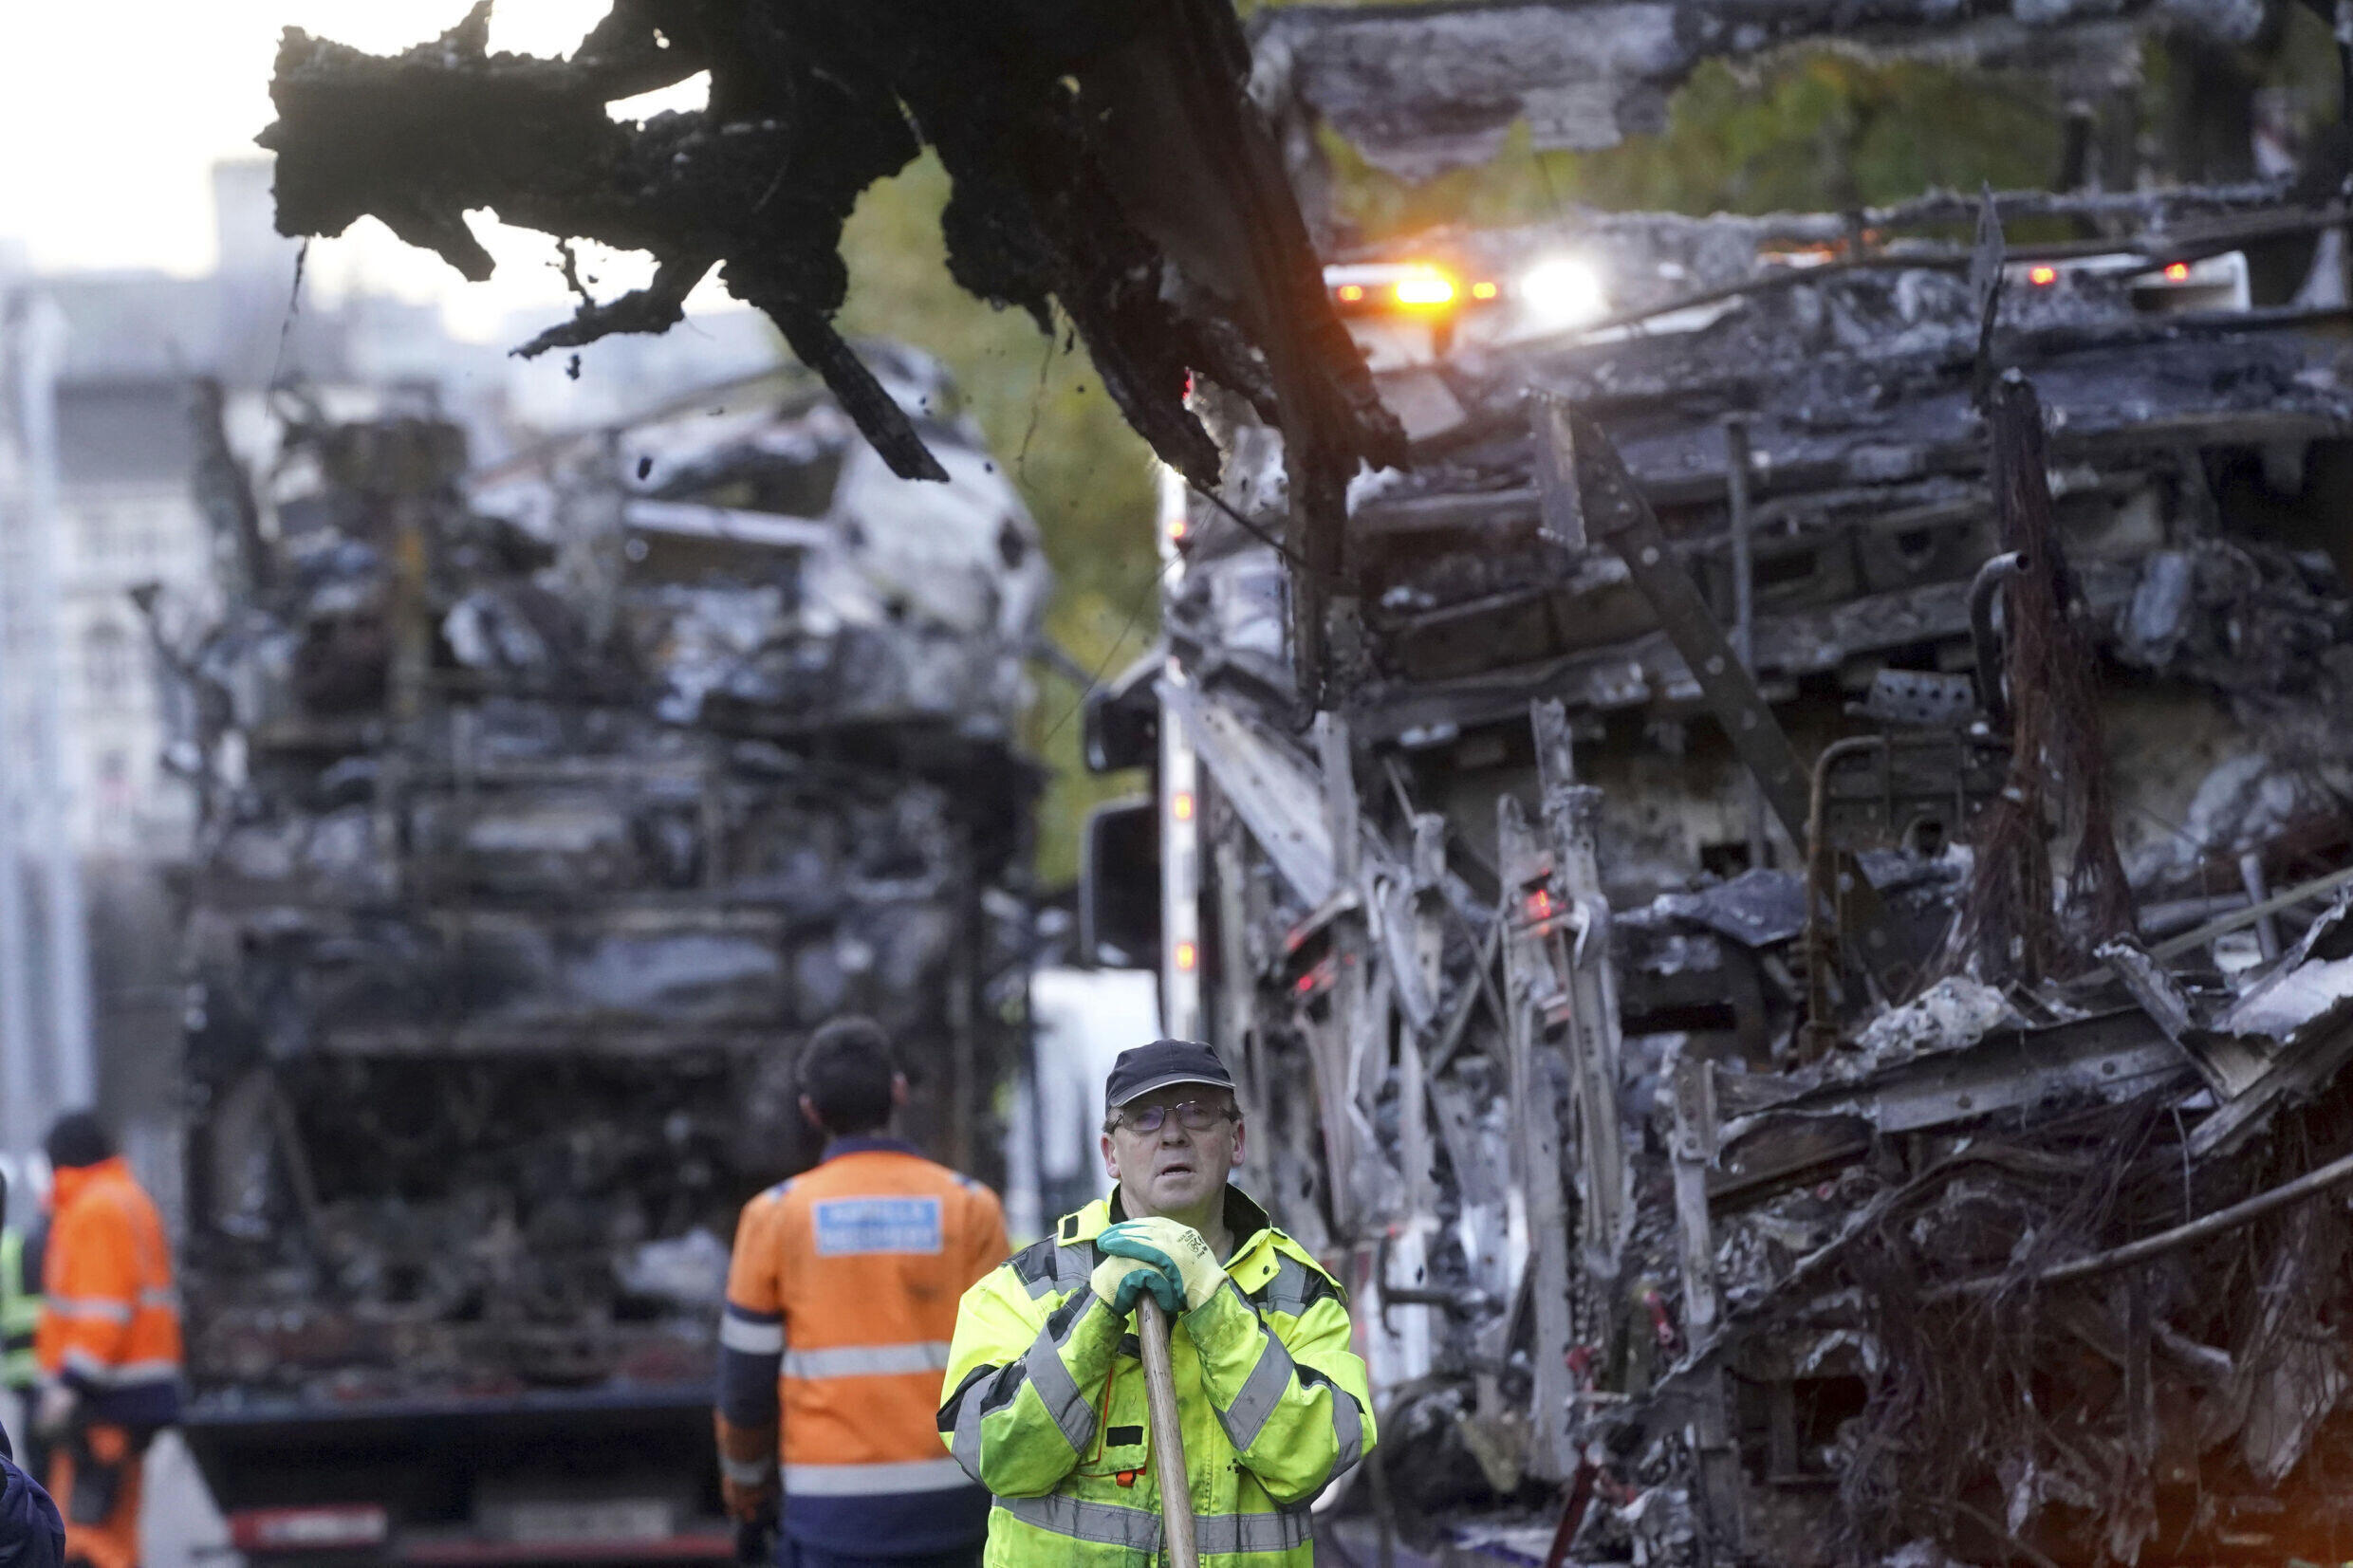 Un aperçu des dégâts, ce vendredi 24 novembre à Dublin, où les transports publics ont notamment été pris pour cible jeudi soir.